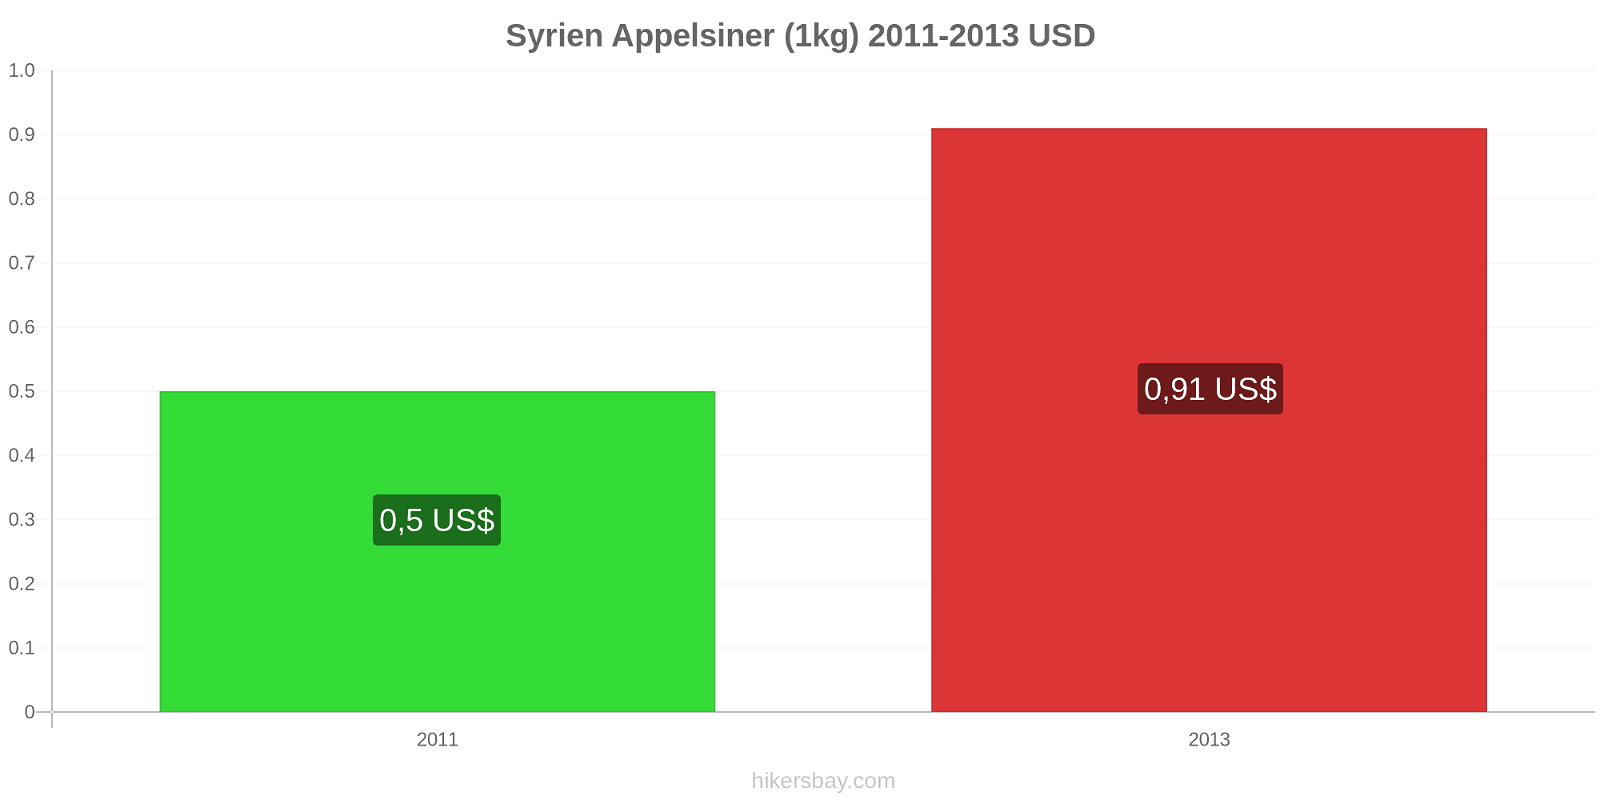 Syrien prisændringer Appelsiner (1kg) hikersbay.com